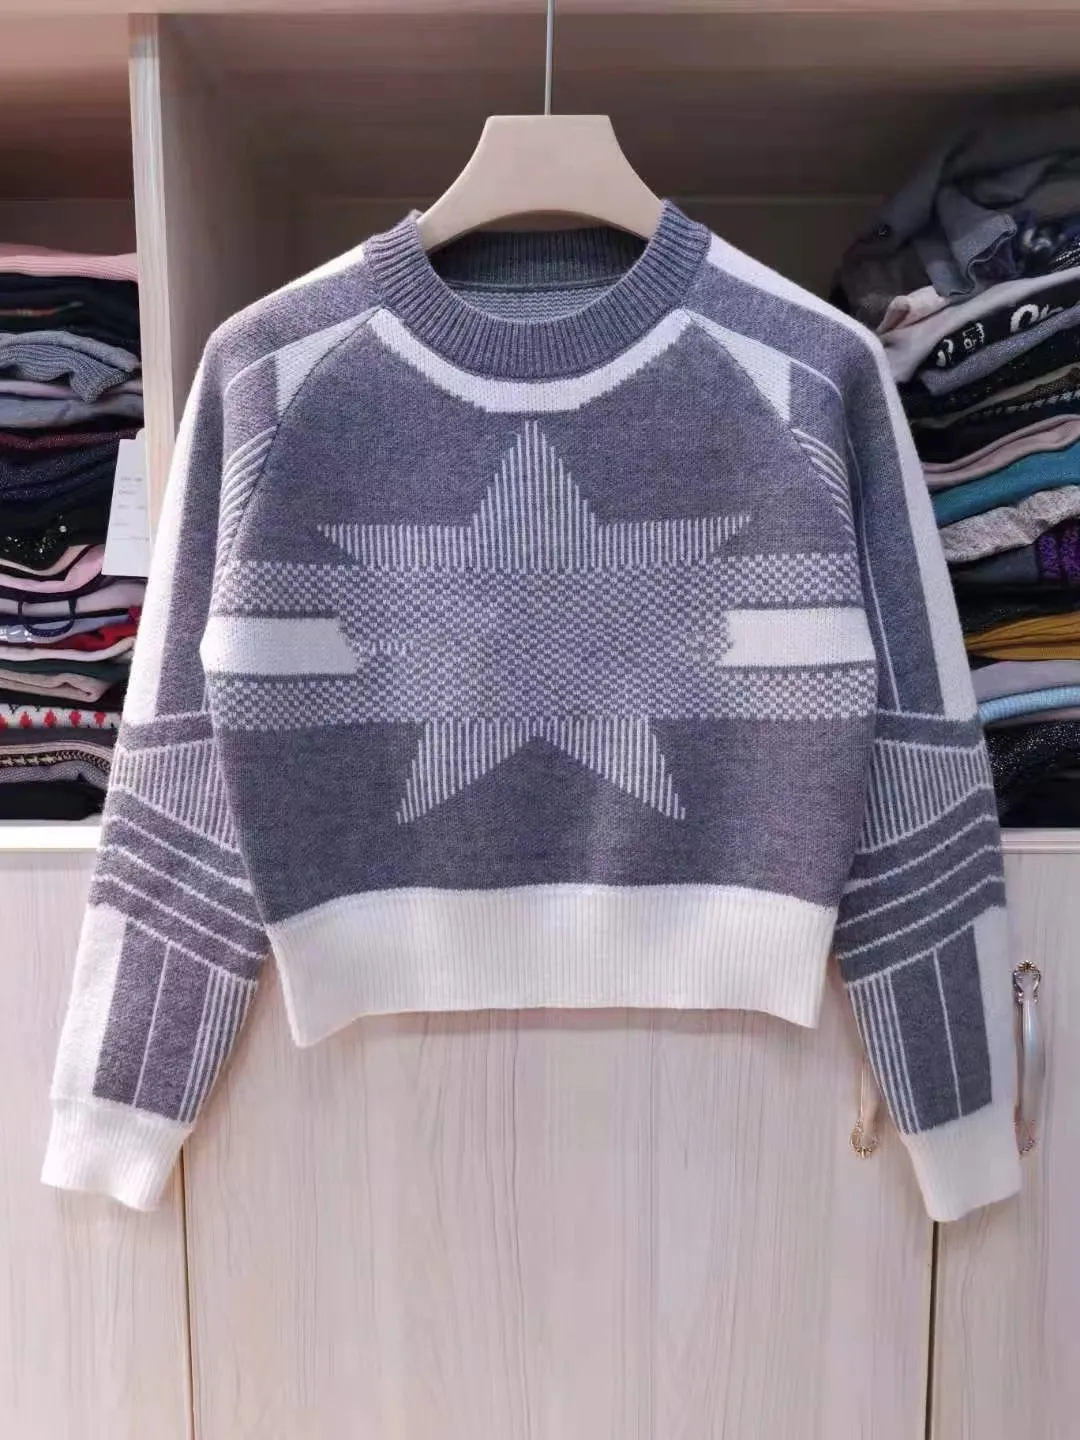 Sweaters informales para mujeres, nuevos productos de moda, suéteres lana